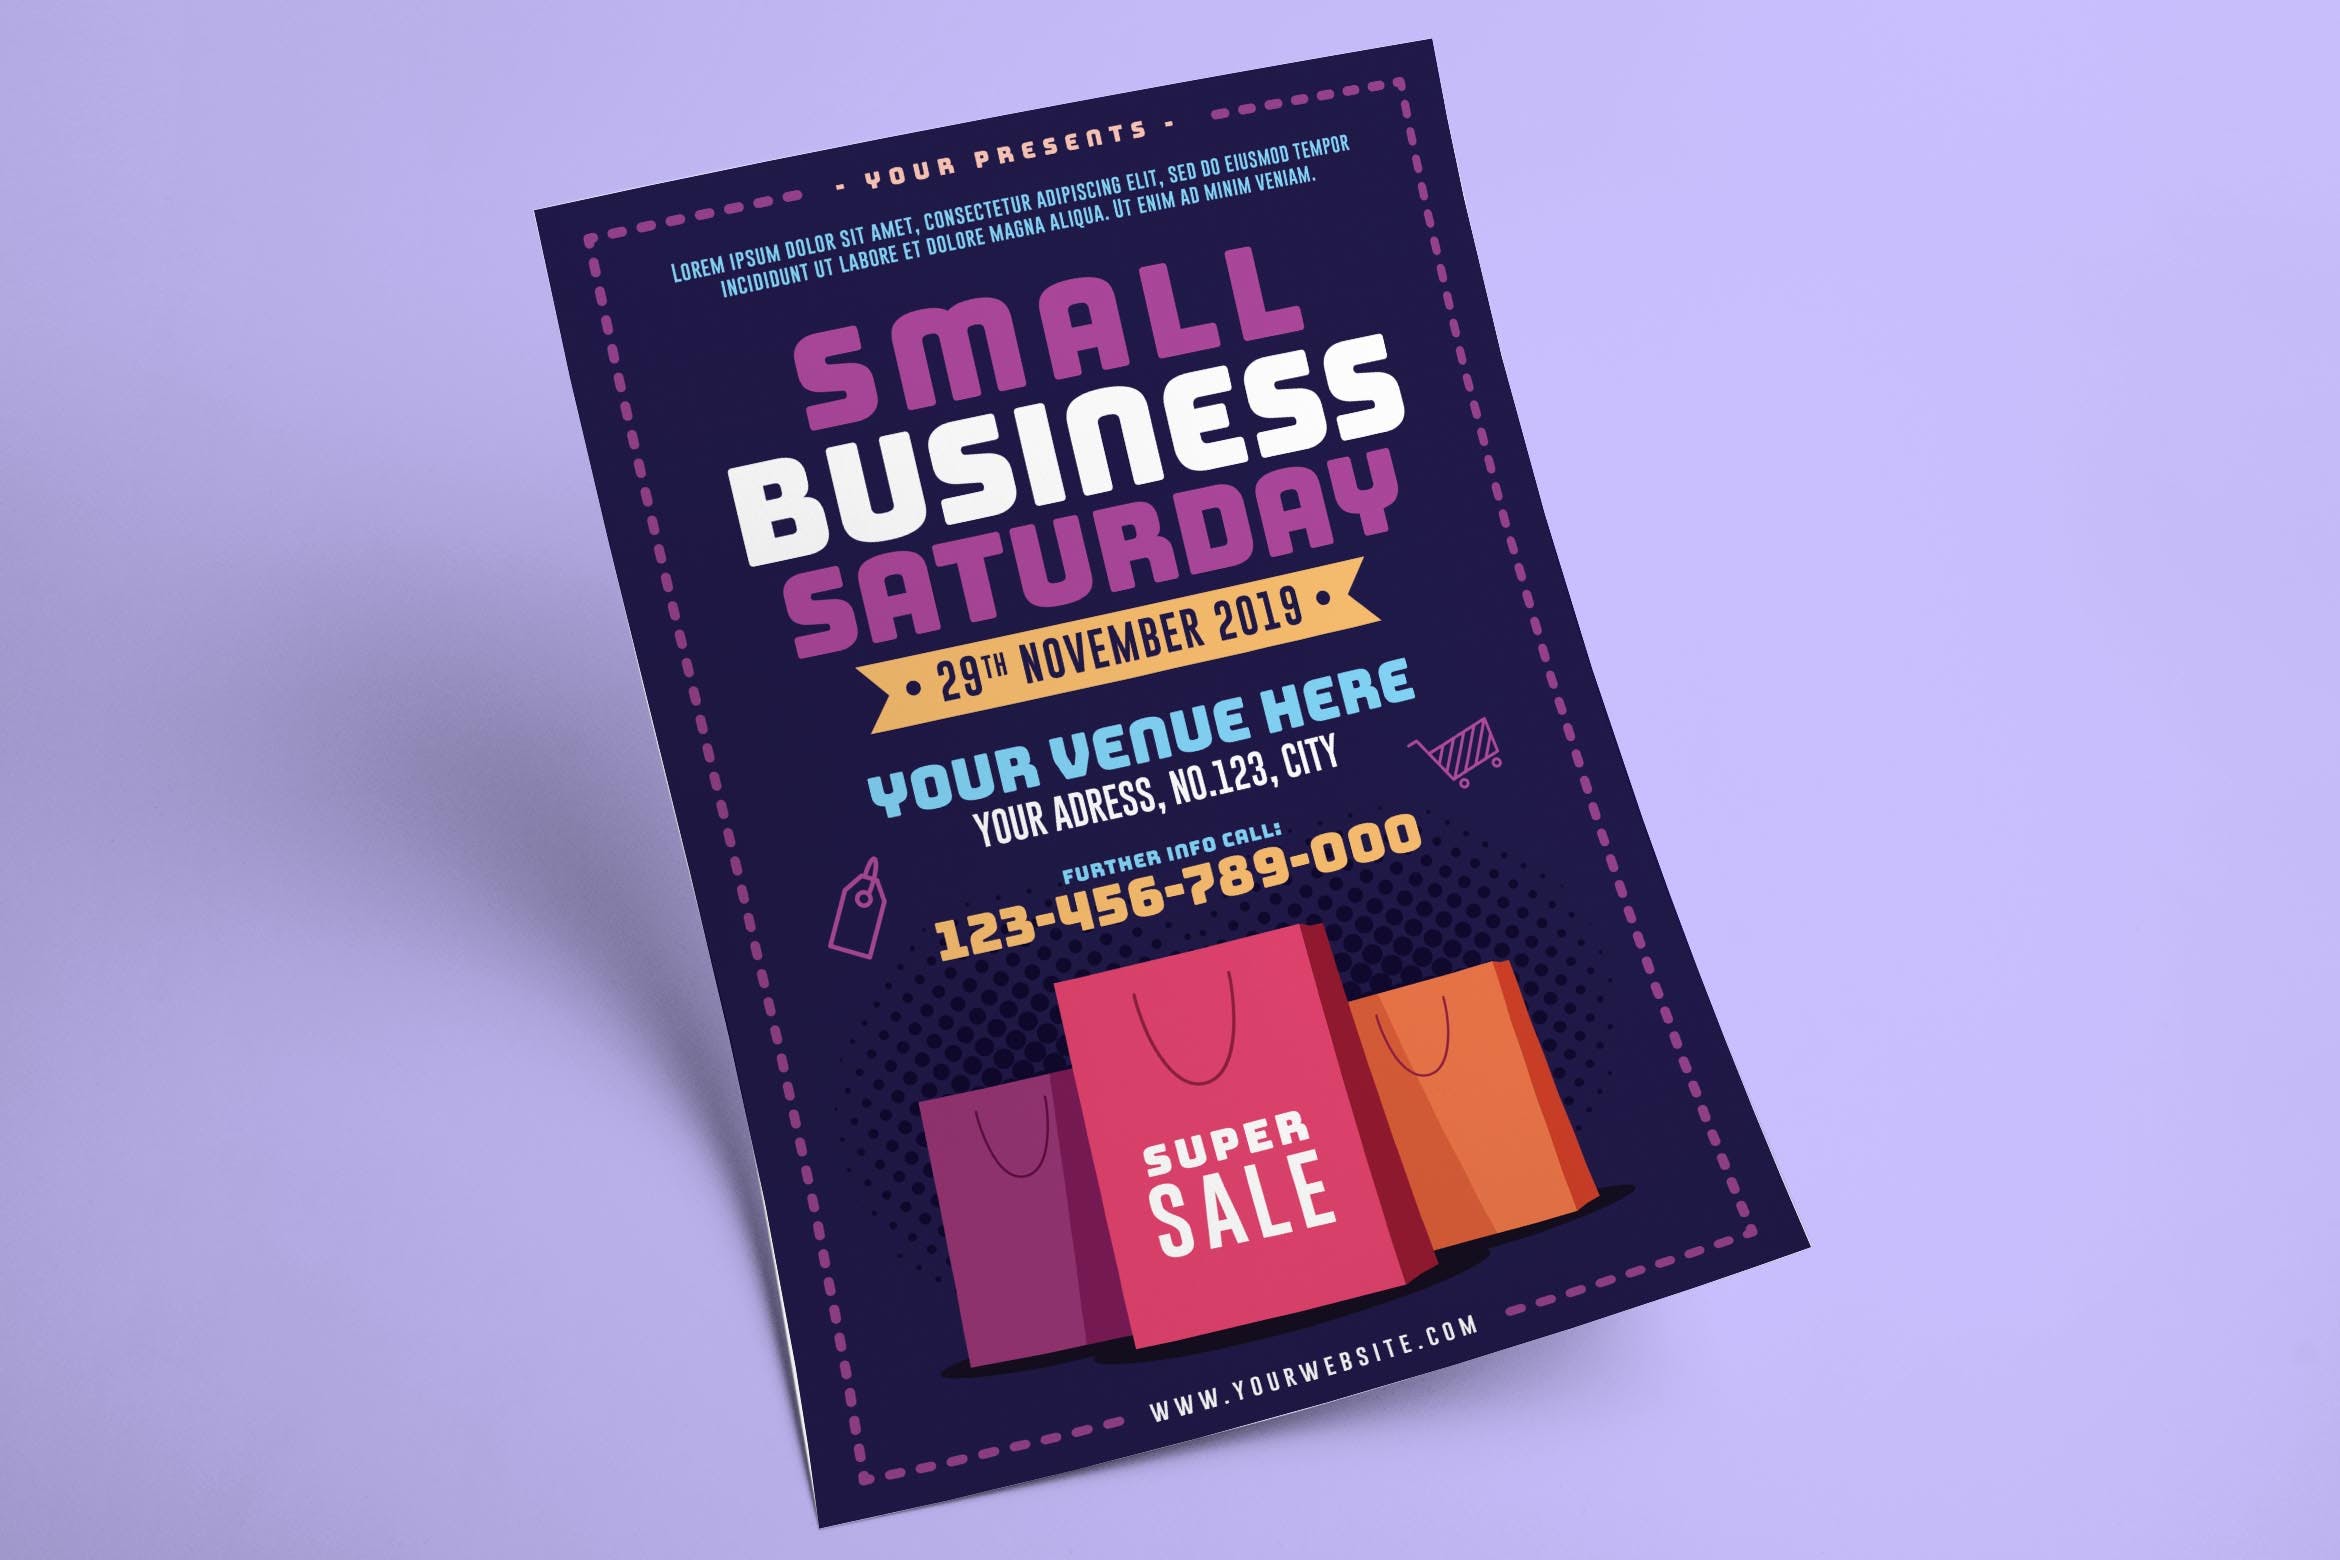 季末促销活动海报传单设计模板 Small Business Saturday Flyer插图